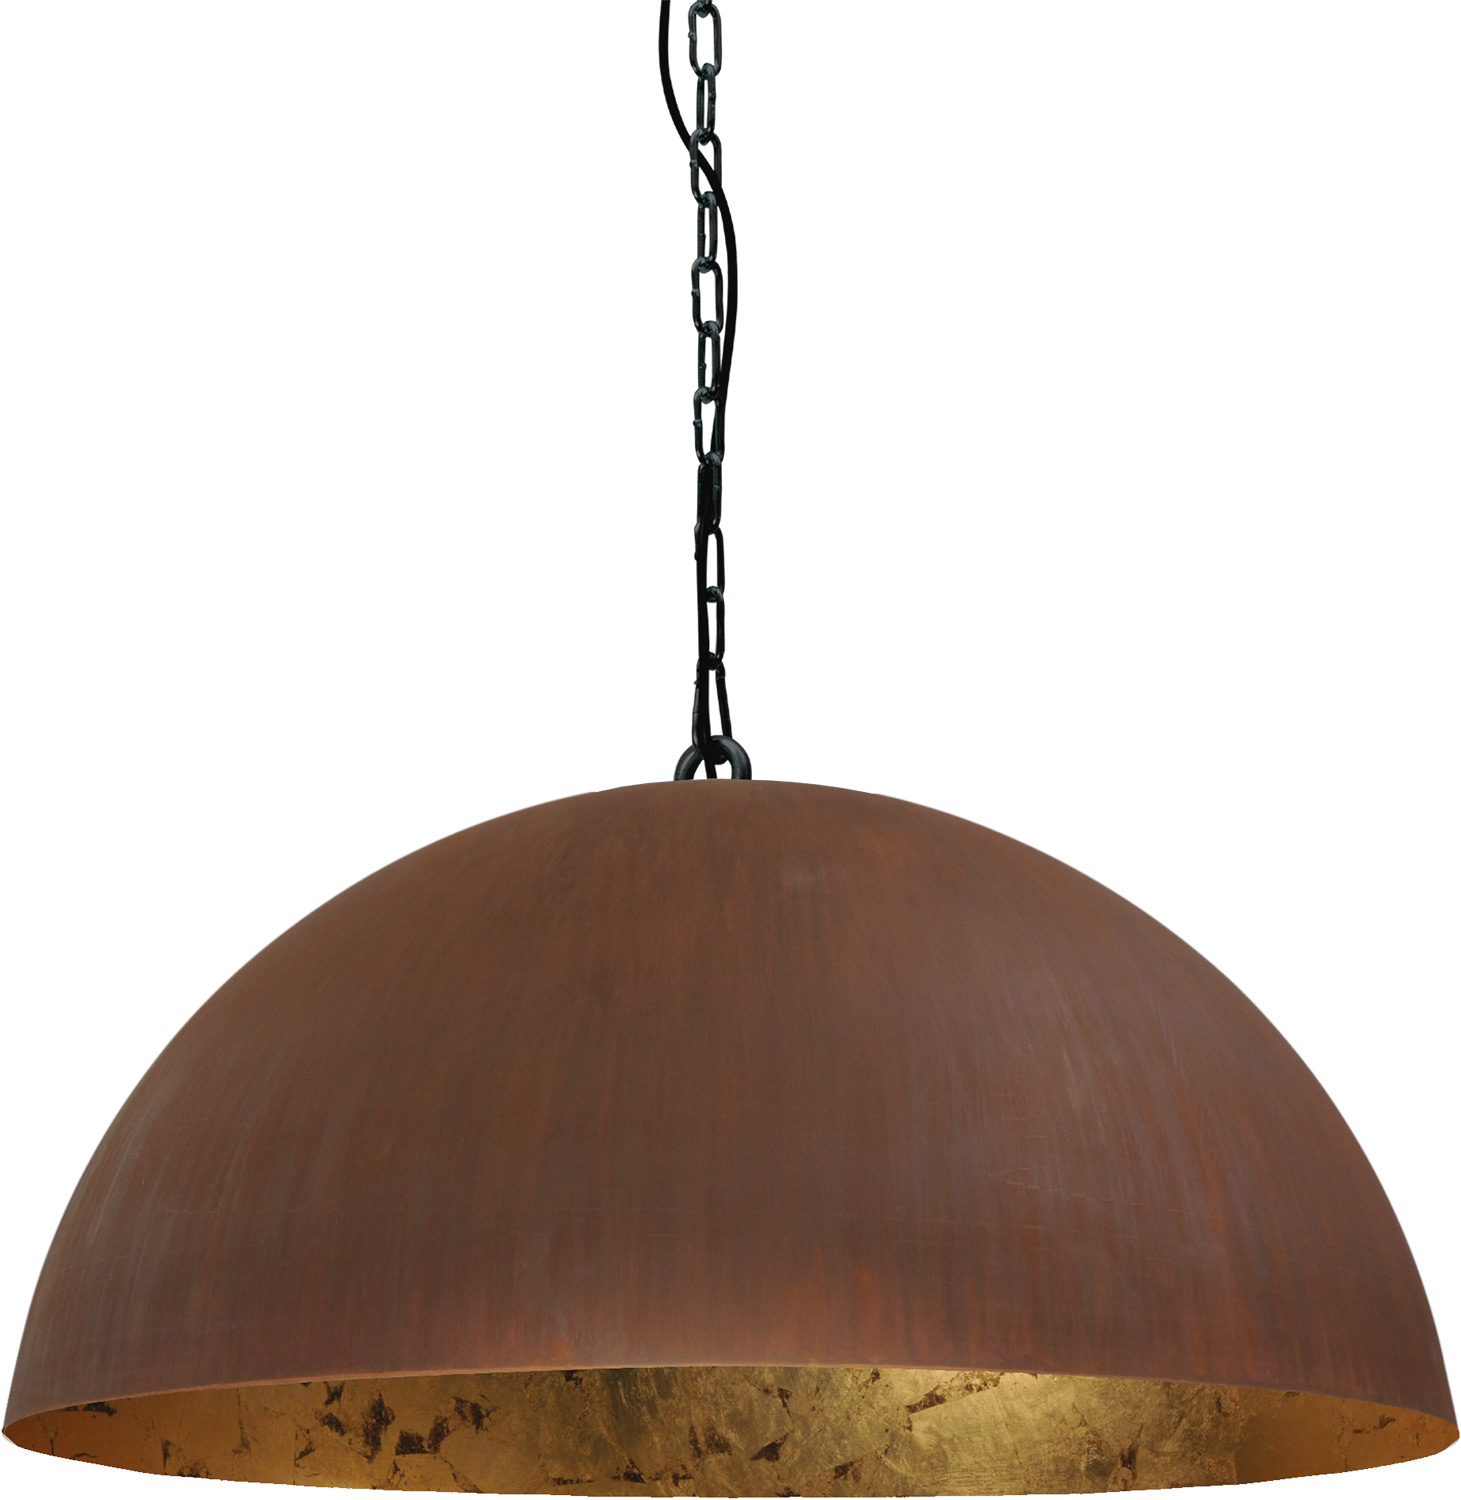 trimmen verkwistend zwart Roest kleurige bol industrie lamp met ketting, goldleaf | Hanglampen -  Licht & Accessoires